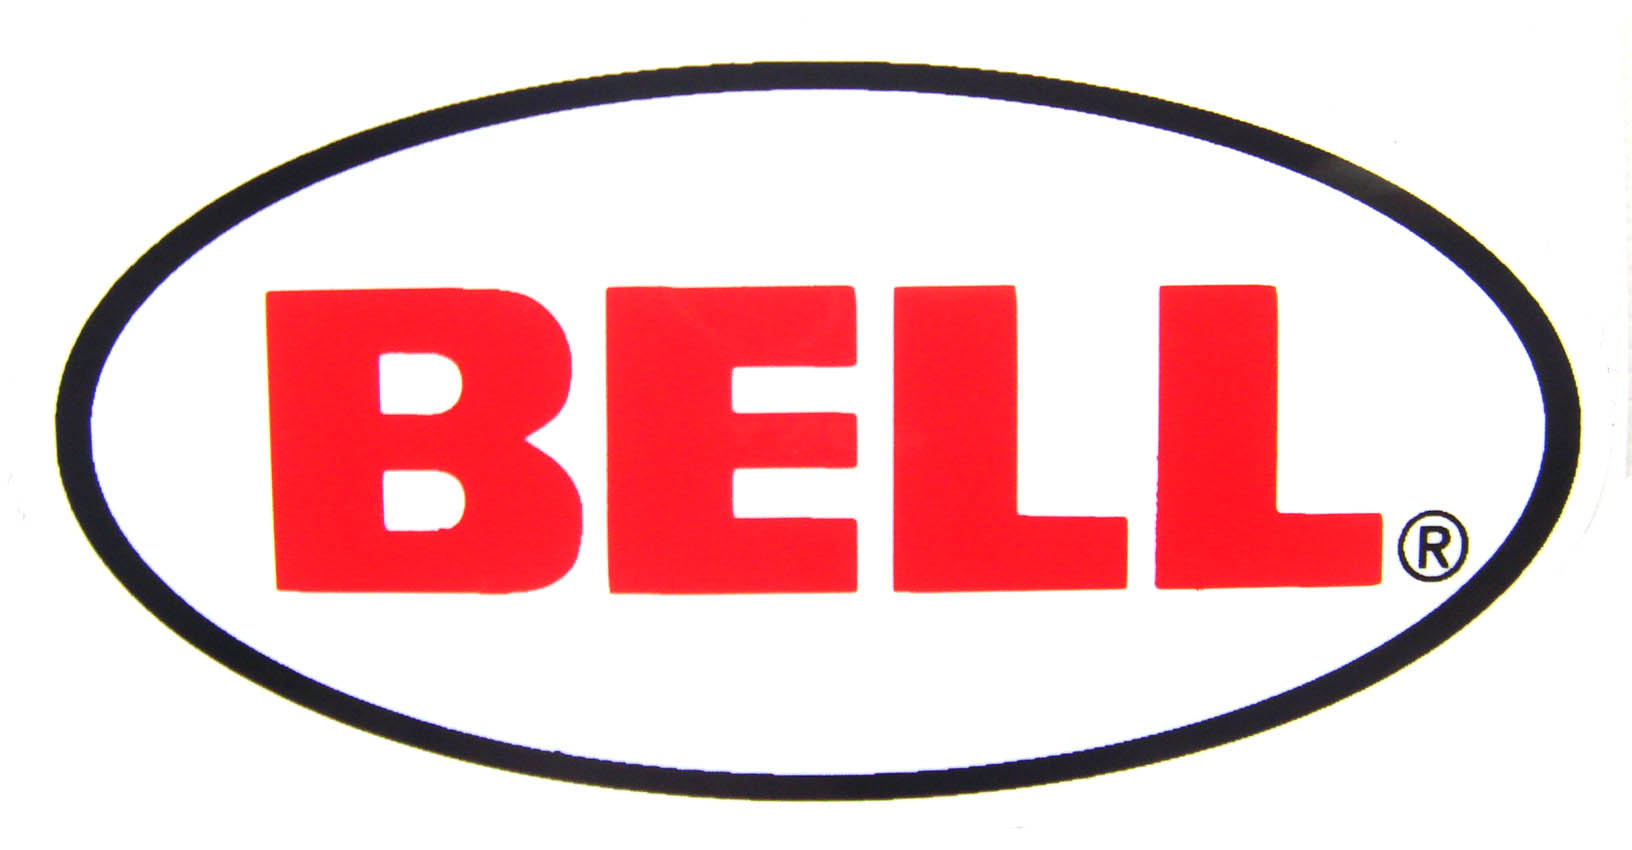 bell-logo